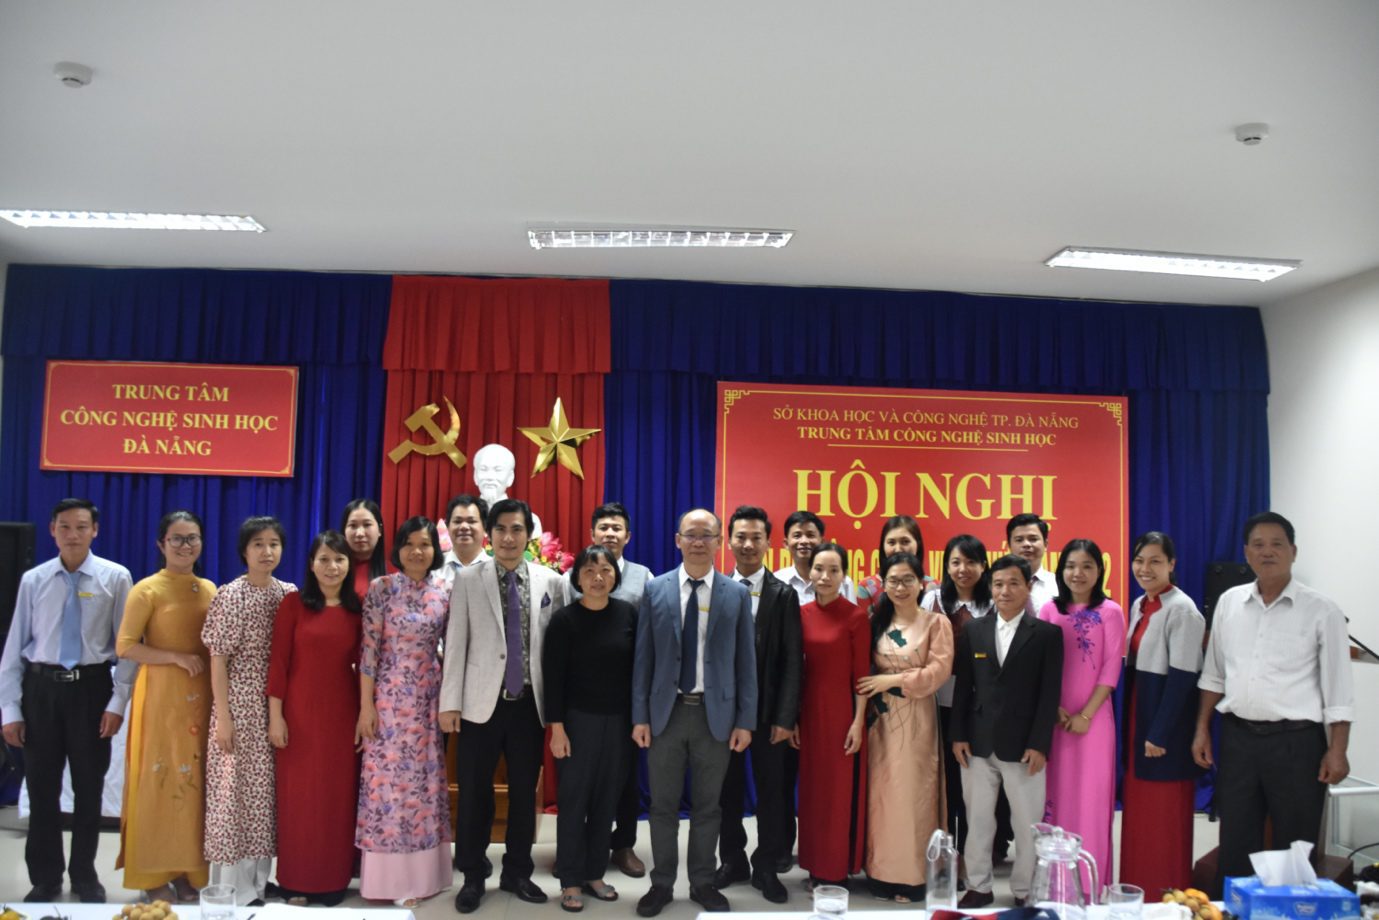 Hội nghị cán bộ công chức, viên chức Trung tâm Công nghệ sinh học Đà Nẵng năm 2022